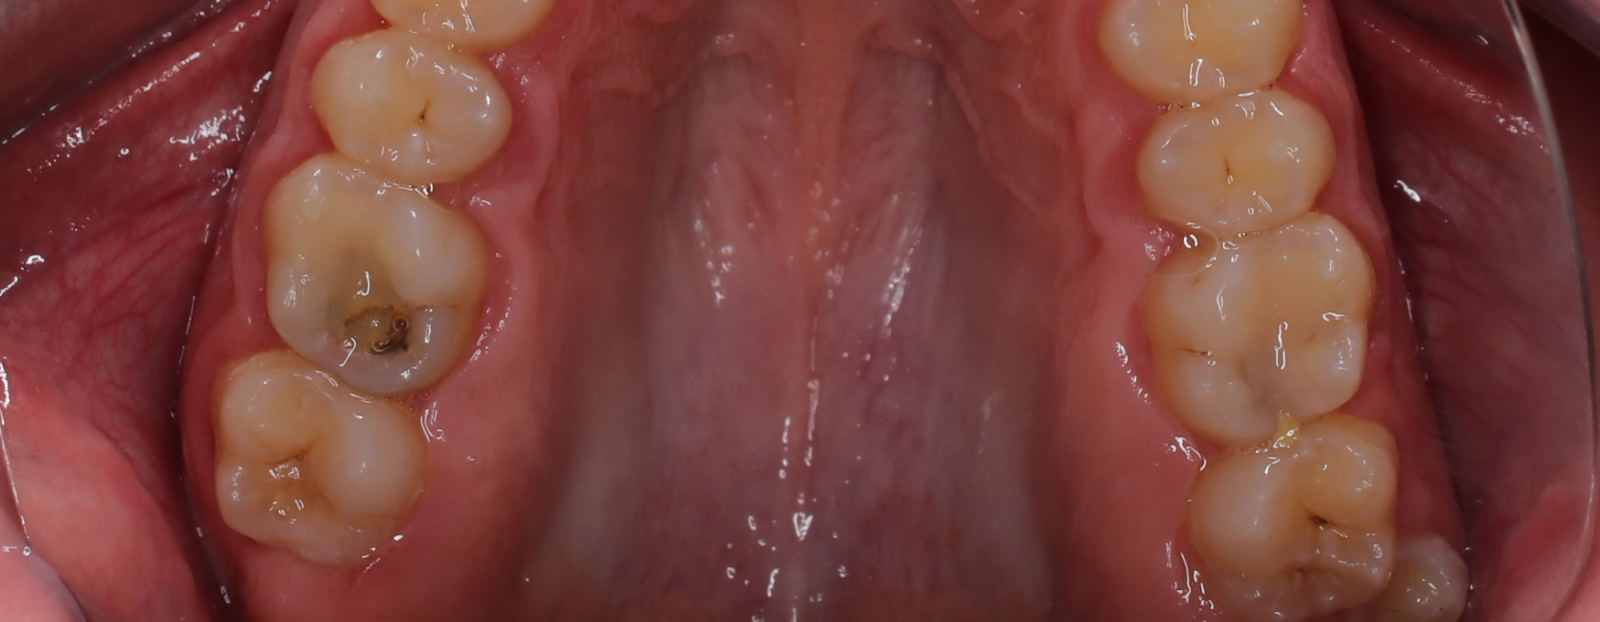 Лечение кариеса на жевательных зубах 35, 36, 37